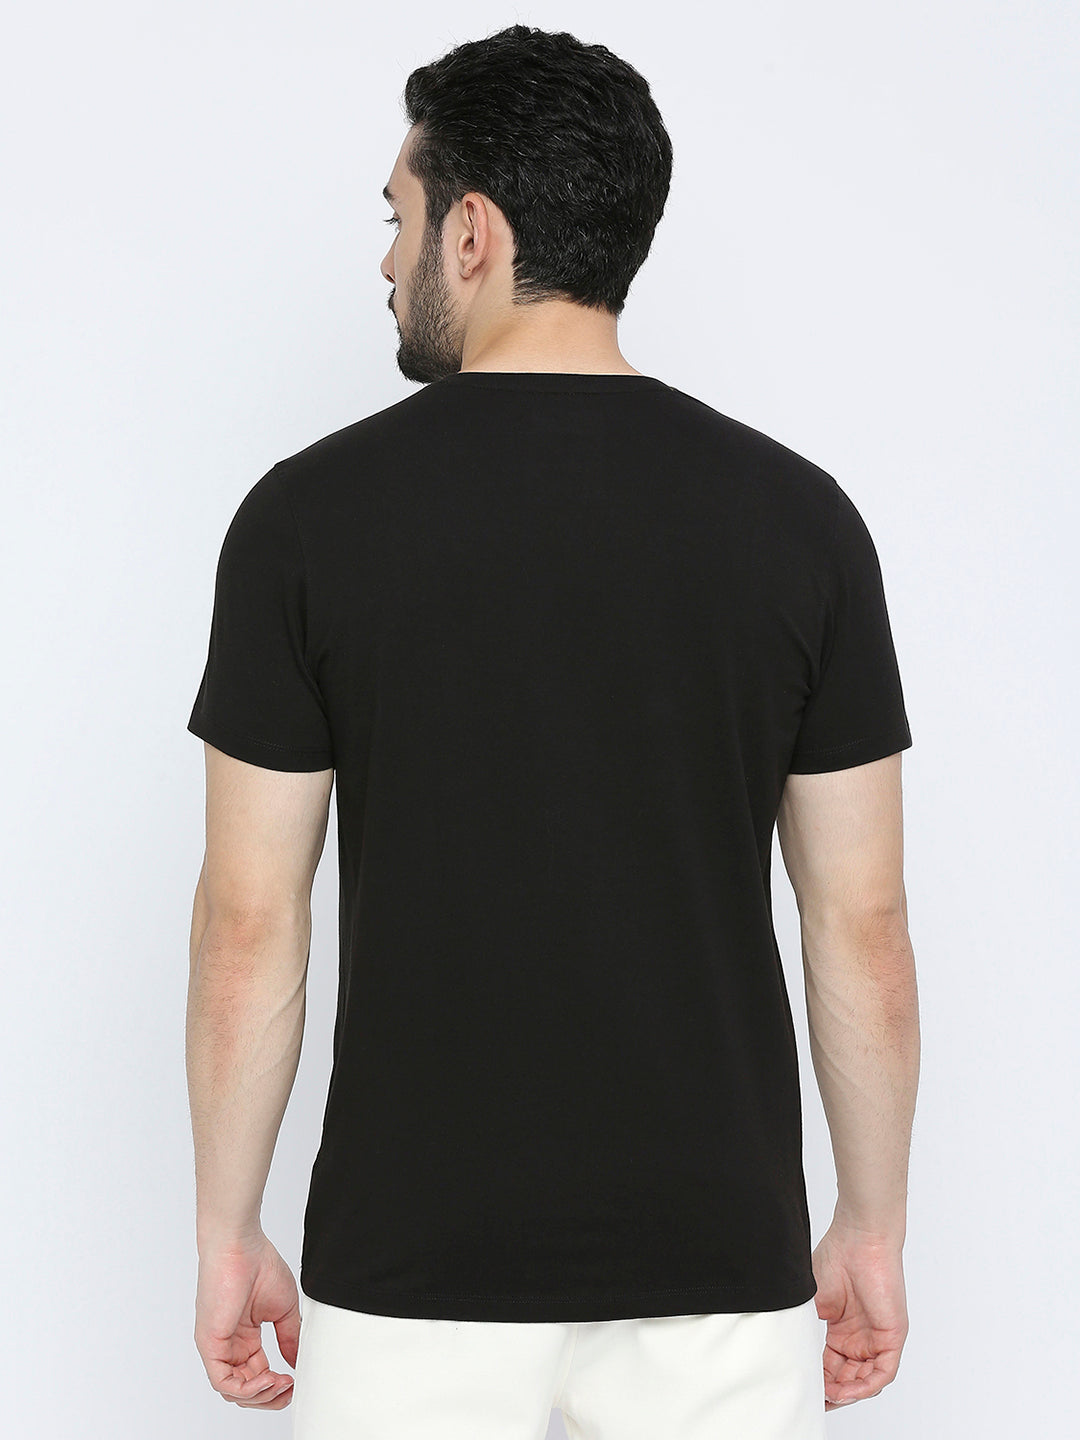 Men Premium Black Cotton V-Neck T-shirt- UnderJeans by Spykar